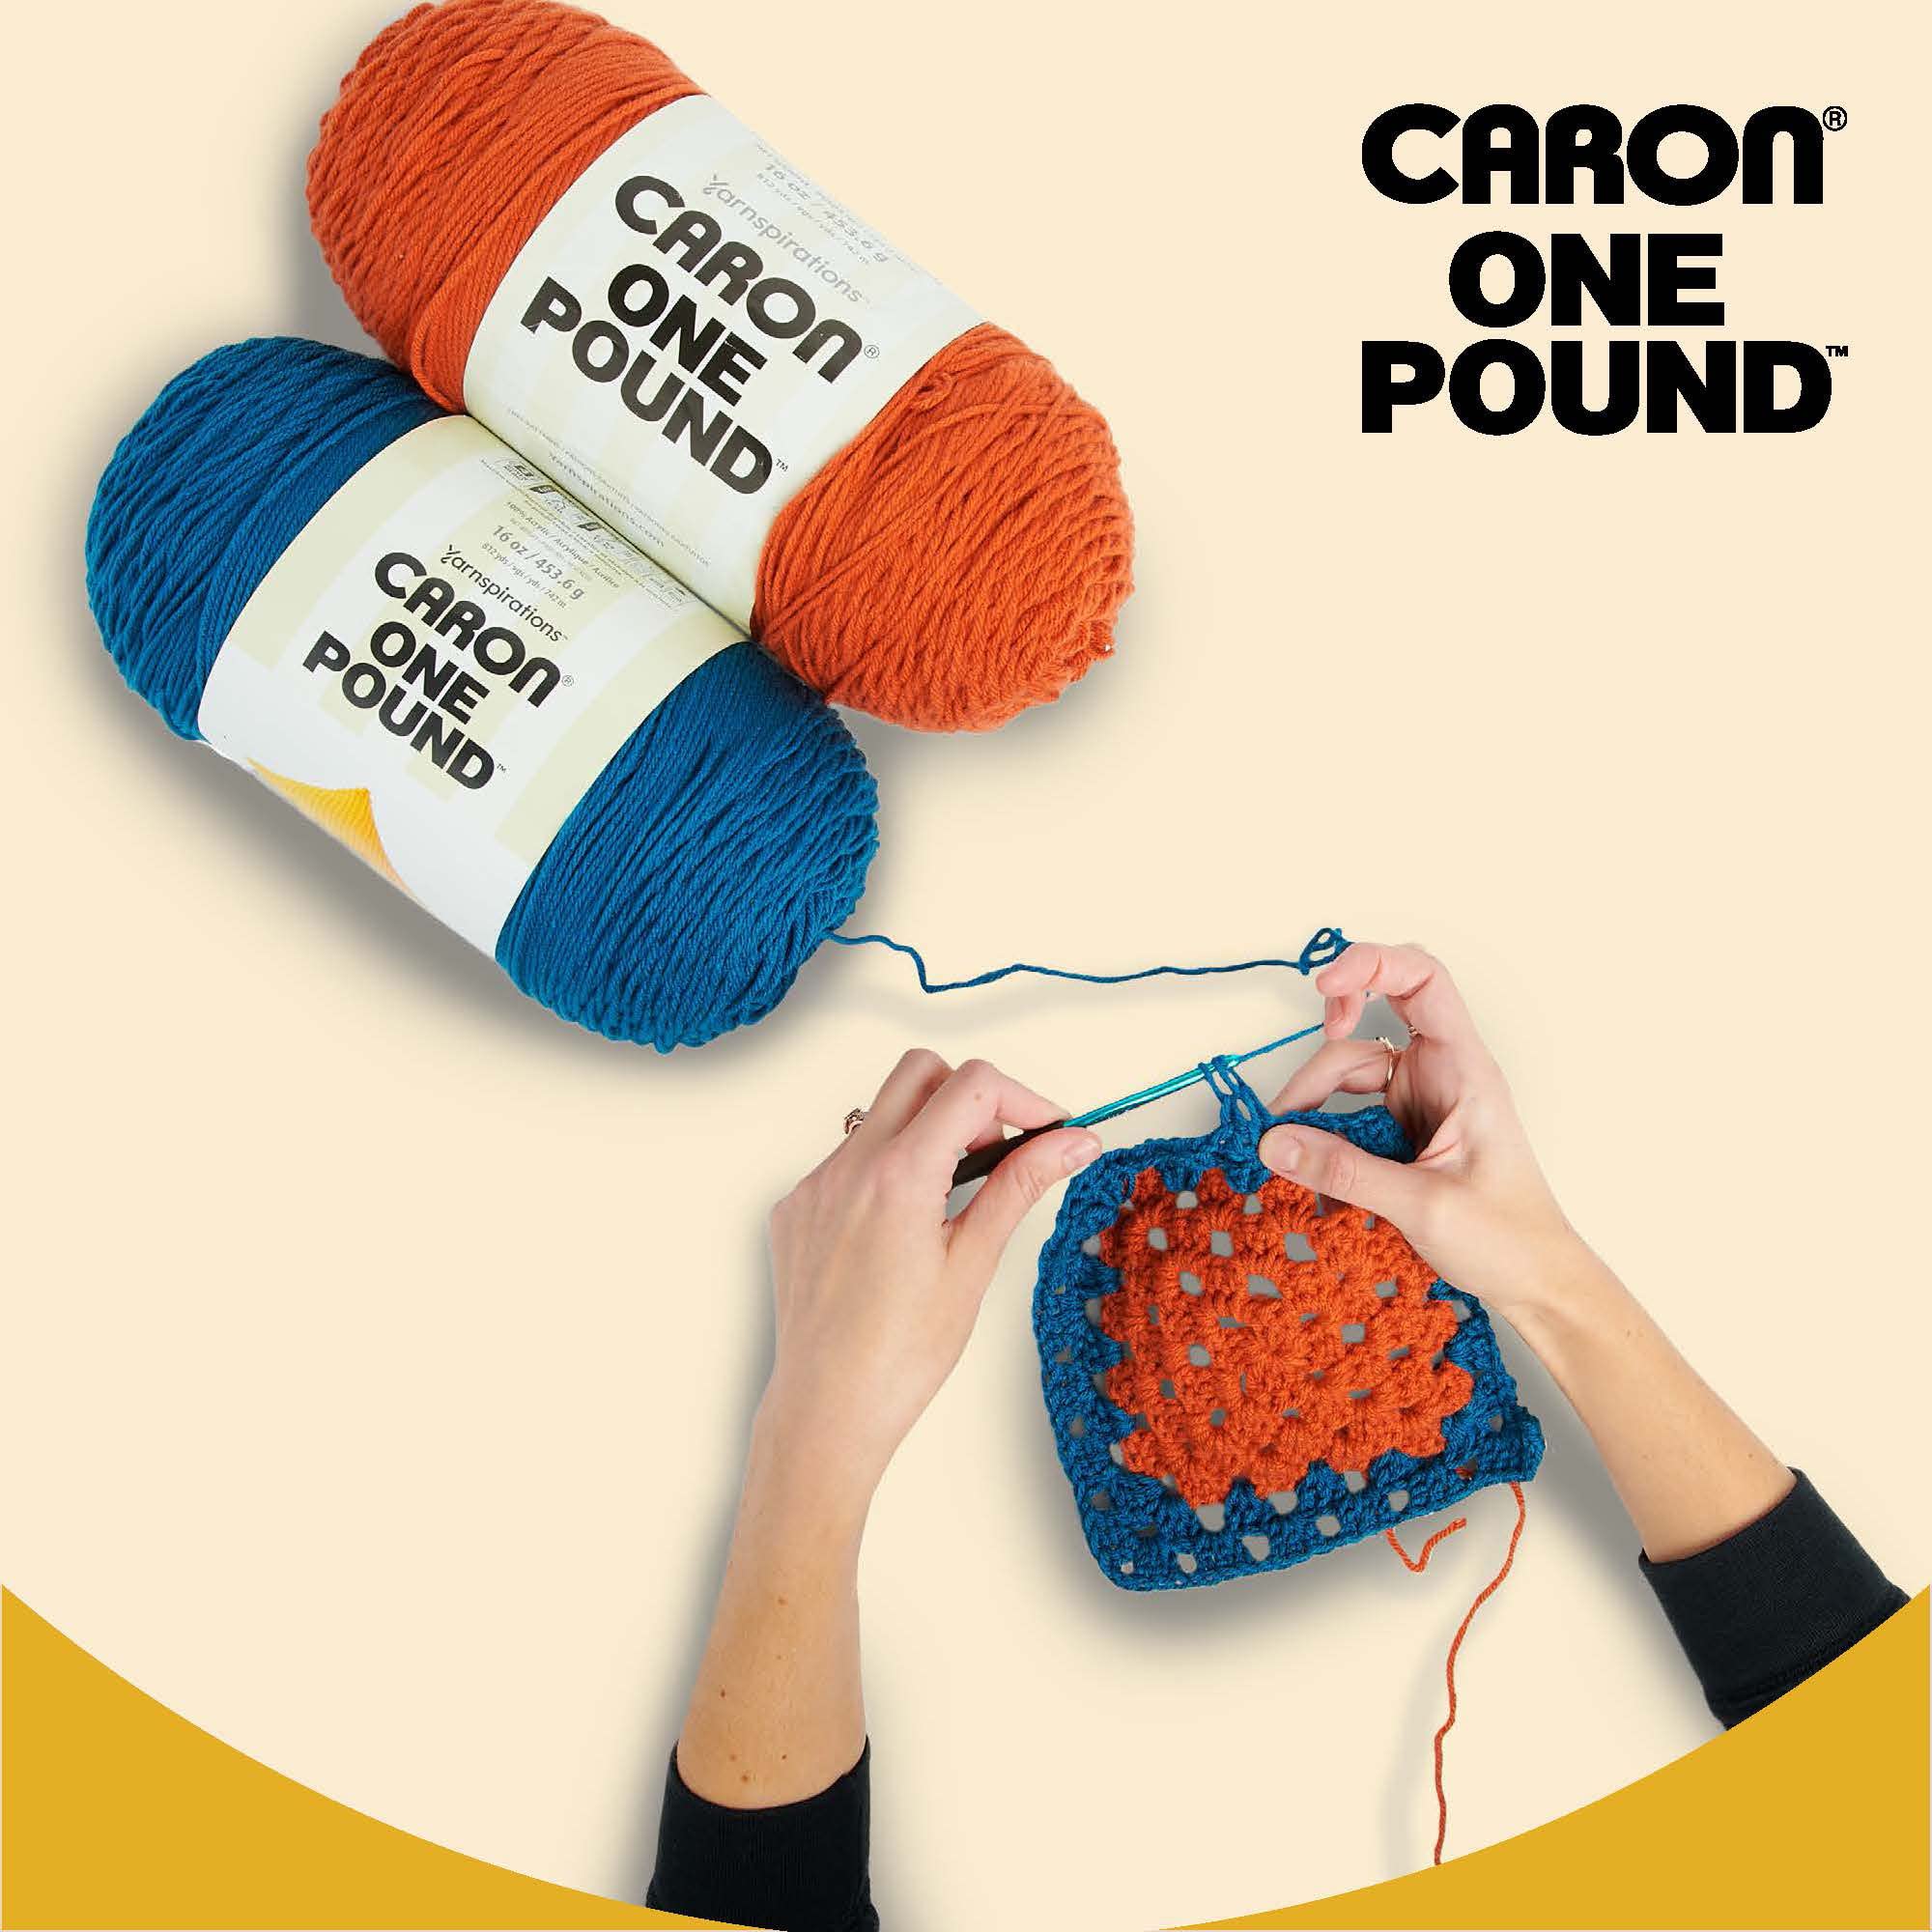 Caron One Pound Black Yarn - 2 Pack of 454g/16oz - Acrylic - 4 Medium (Worsted) - 812 Yards - Knitting, Crocheting & Crafts